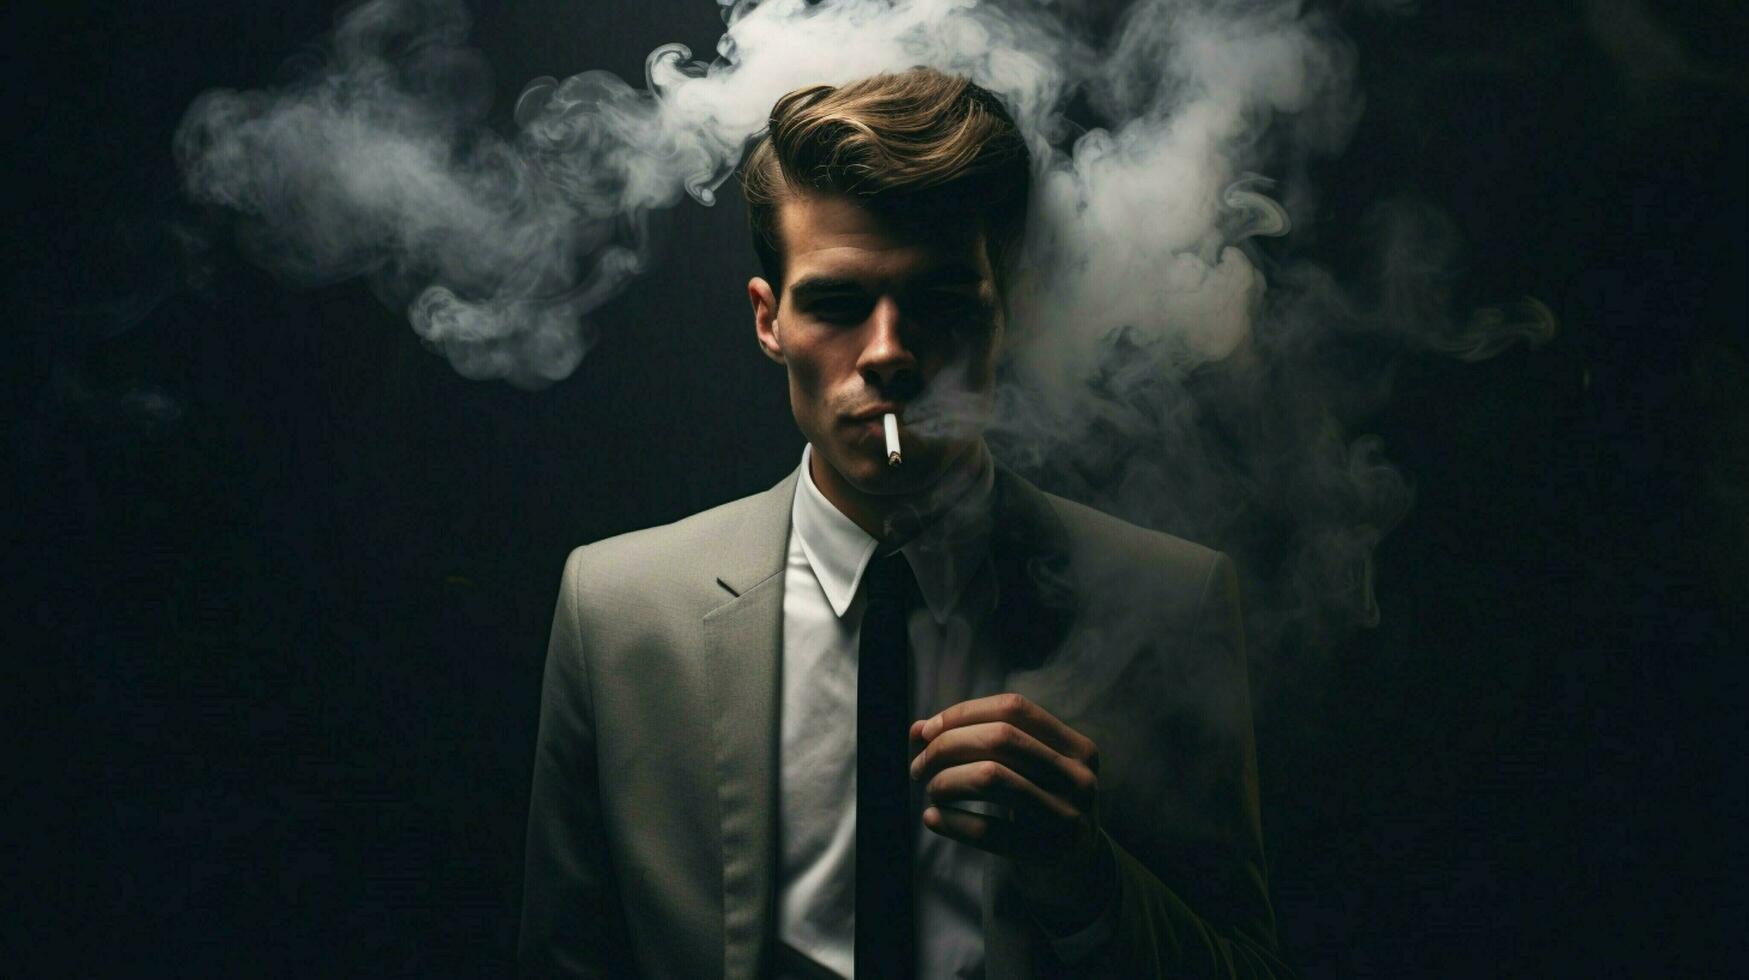 smoking men unhealthy habit captured in portrait photo